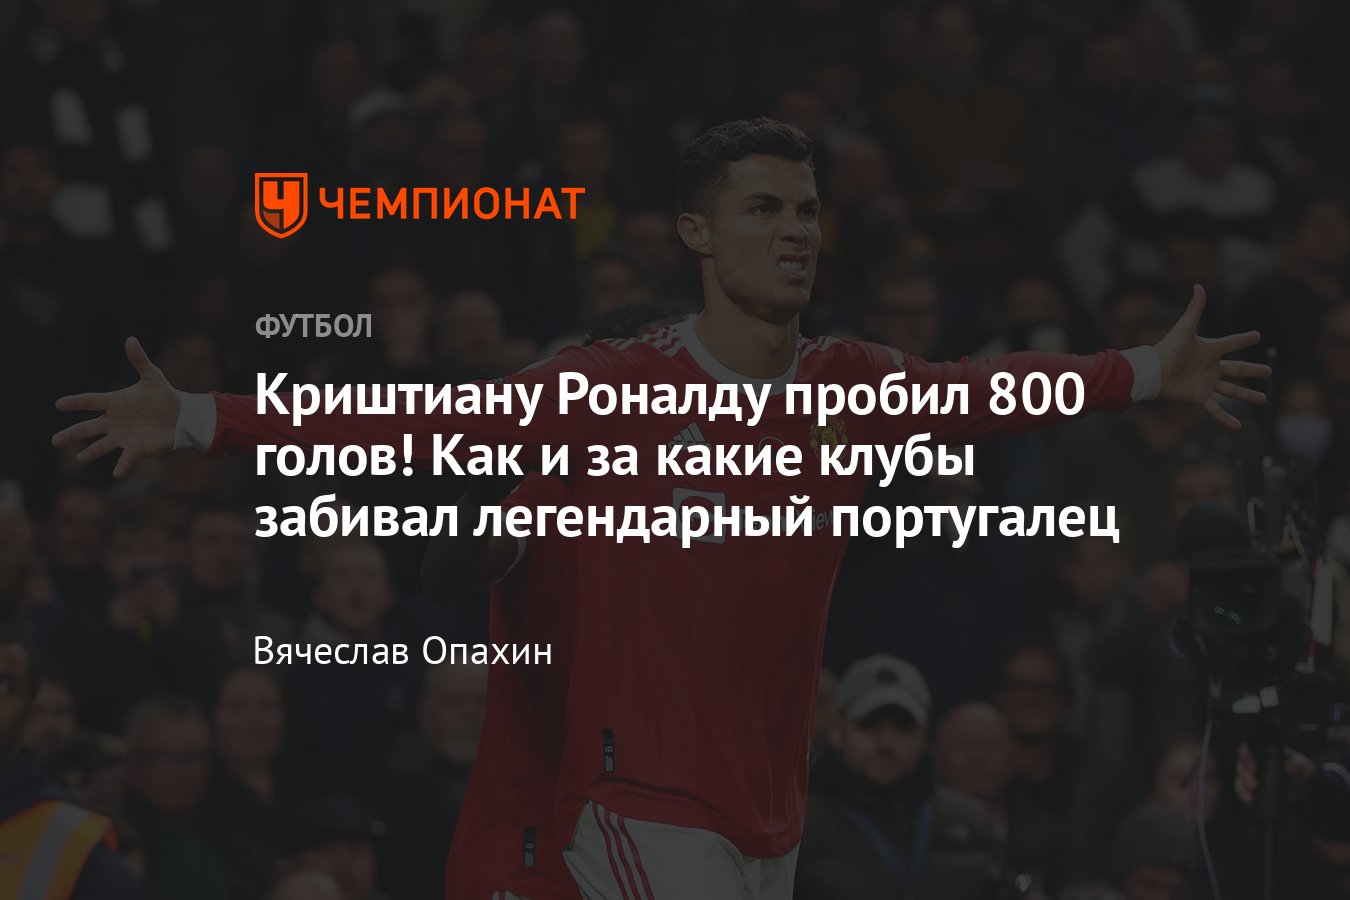 Роналду забил 800 голов: за какие клубы забивал — «Реал», «Манчестер  Юнайтед», «Ювентус», «Спортинг», сборная Португалии - Чемпионат